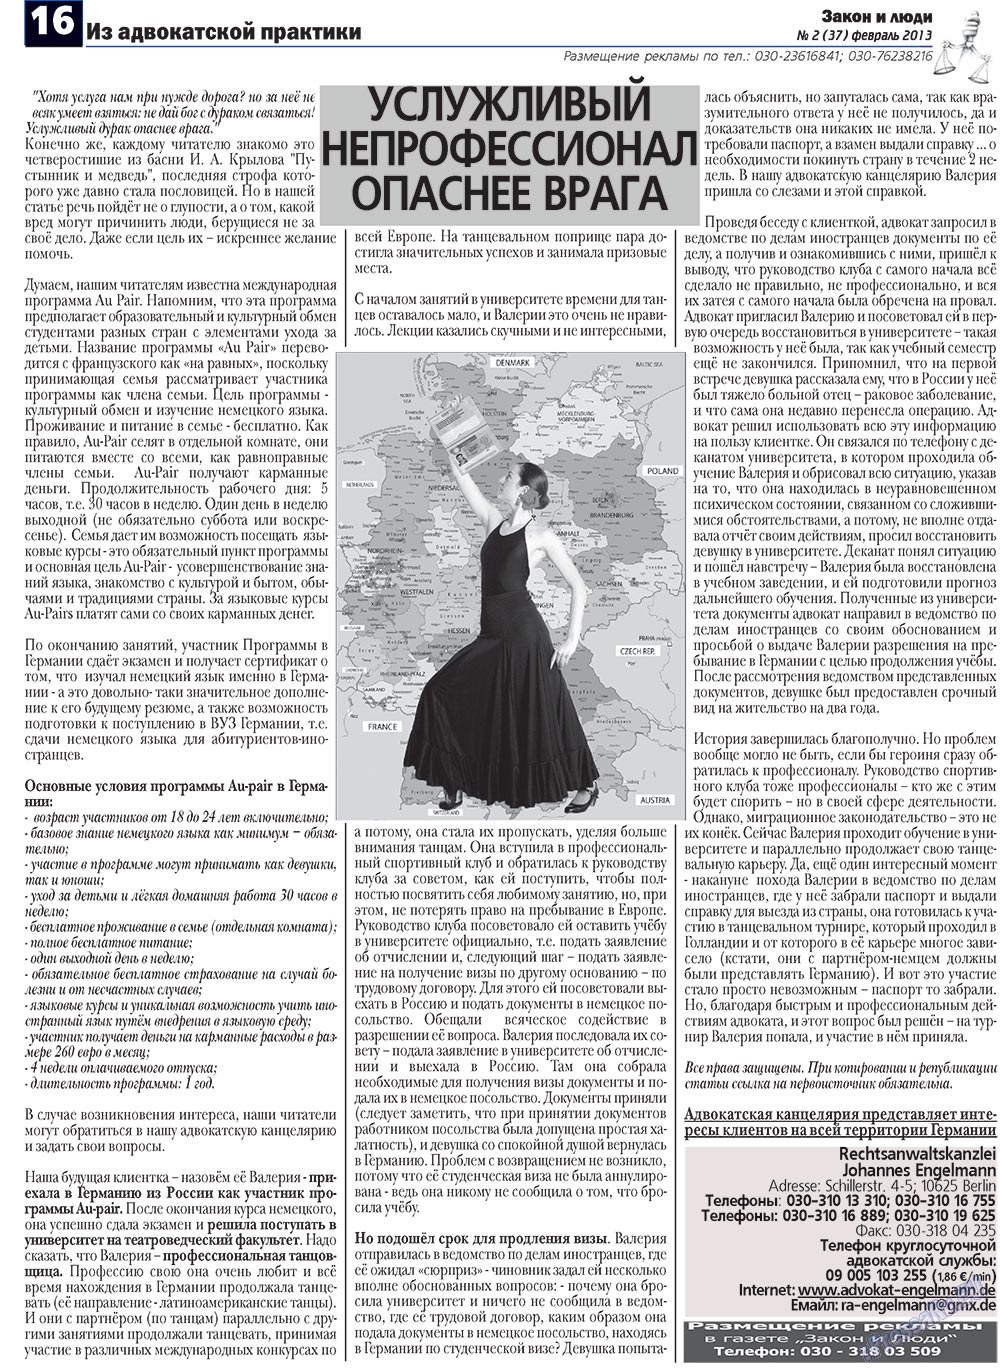 Закон и люди, газета. 2013 №2 стр.16